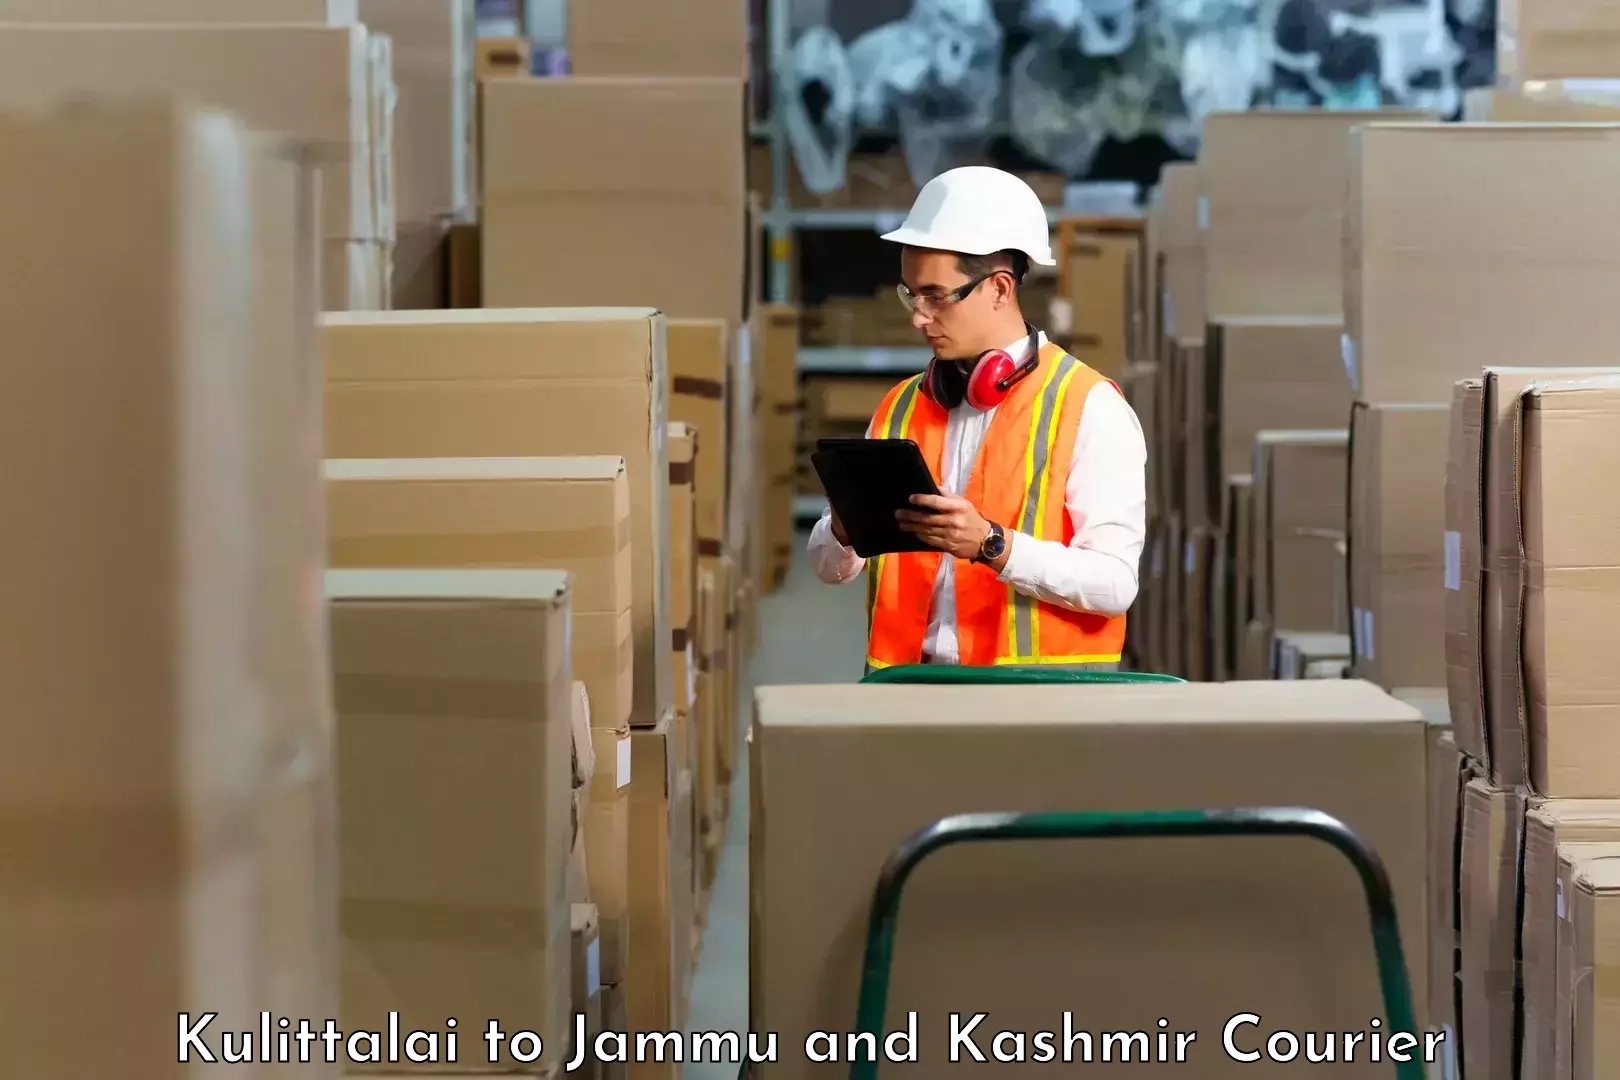 Cargo courier service Kulittalai to IIT Jammu